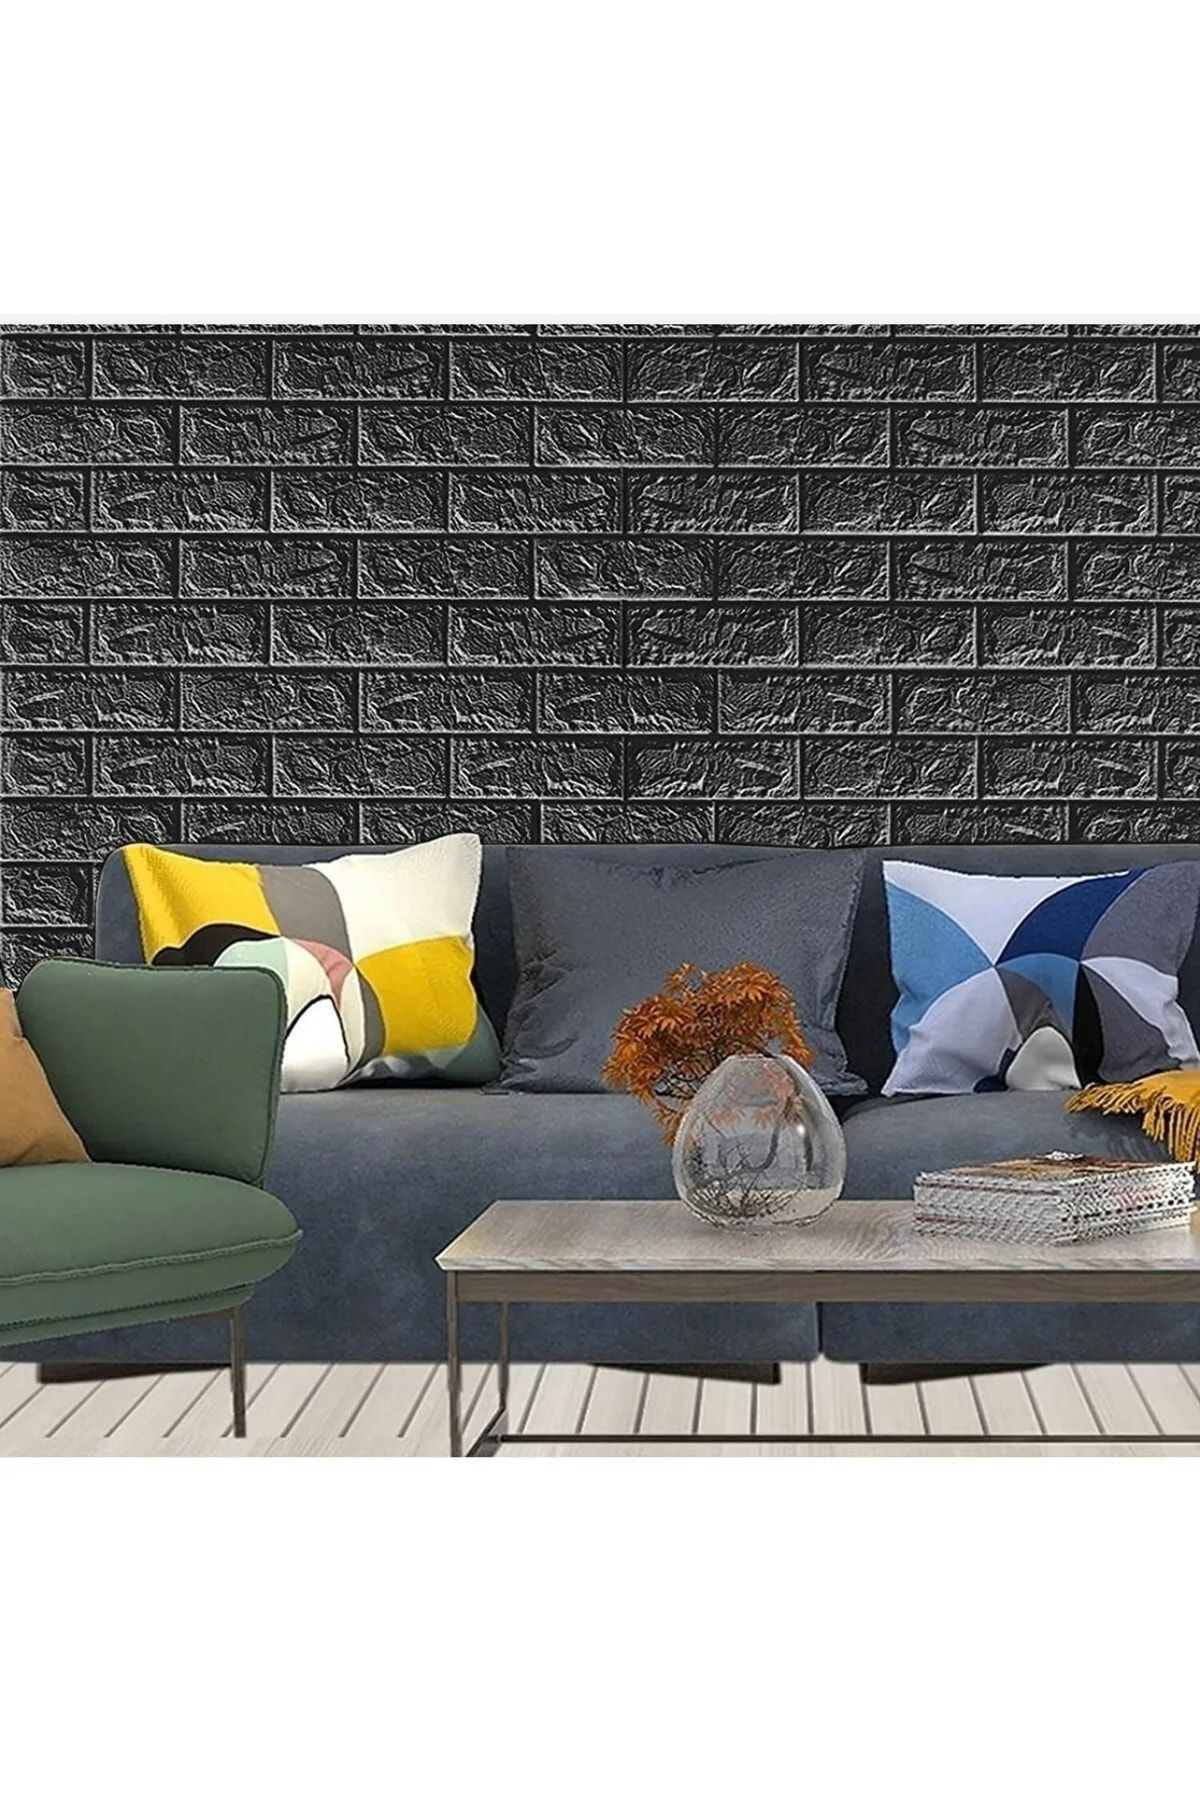 A'PIEU Kendinden Yapışkanlı Duvar Kağıdı Paneli Esnek Köpük Siyah Taş Desen Kaplama 50x70